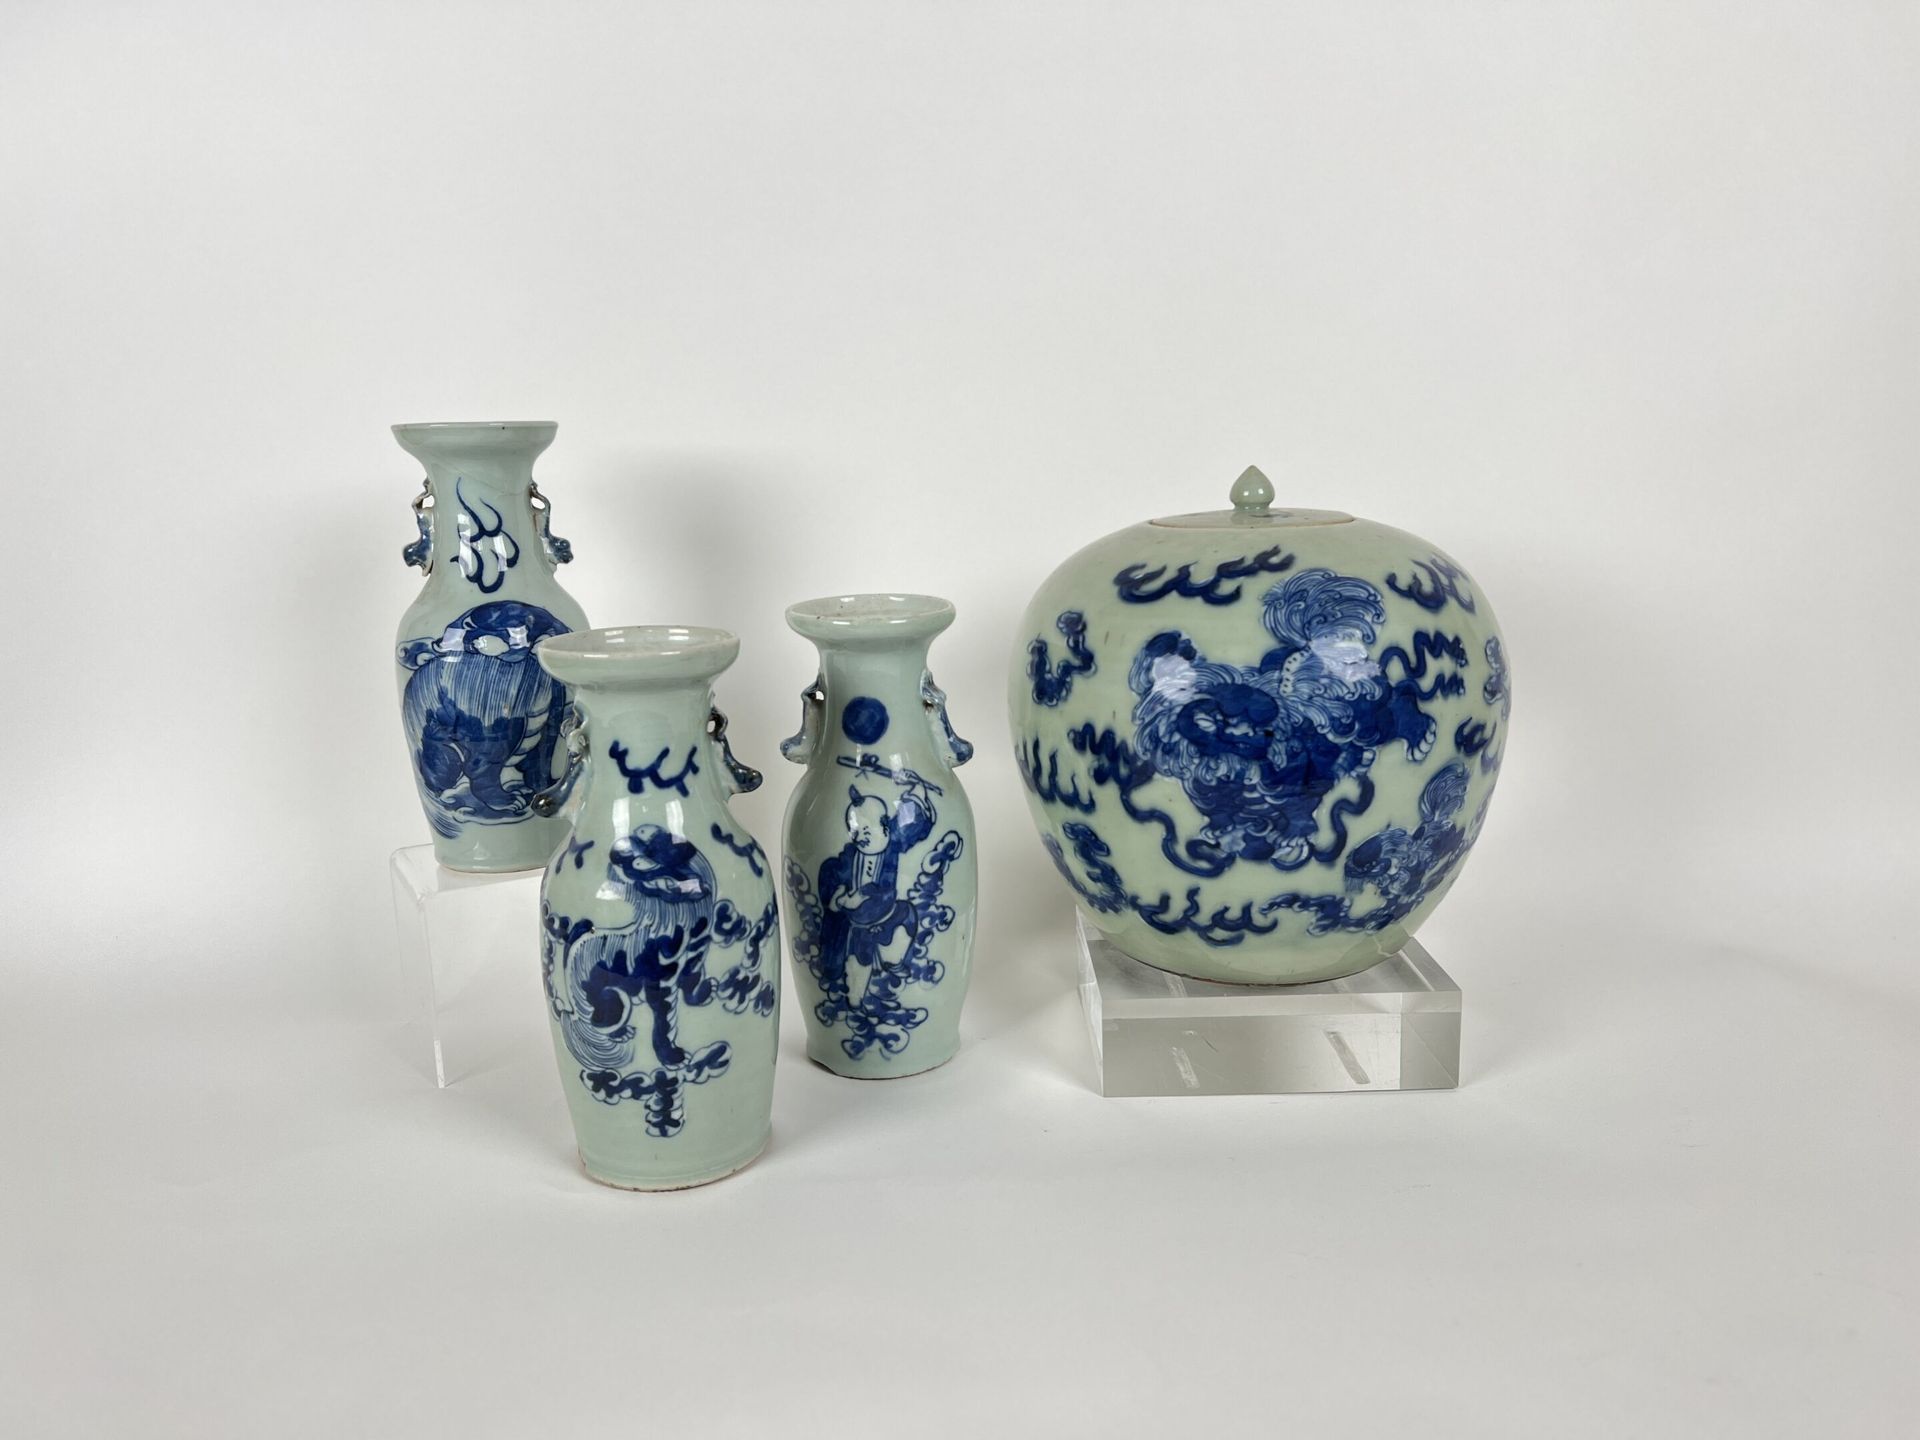 Null 中国, 南金
青花珐琅彩瓷器中的姜饼壶和3个马利特瓶，上面有中国人的笑脸。
(一个花瓶的颈部被损坏并被修复)。
高23.5厘米。 




---
通&hellip;